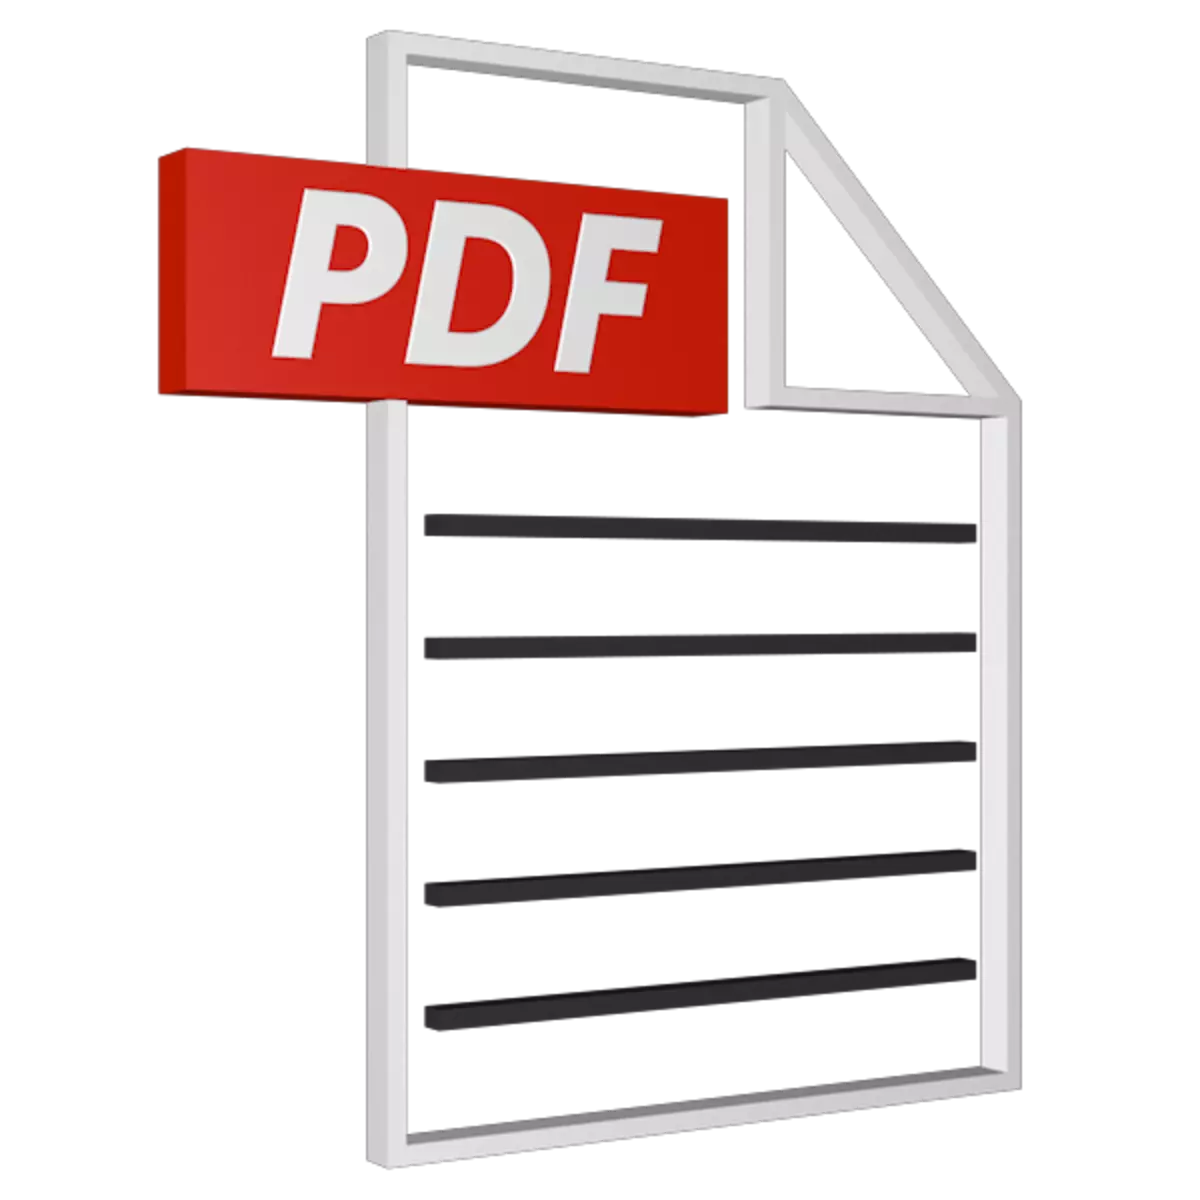 Bernameyên ji bo afirandina pelên pdf